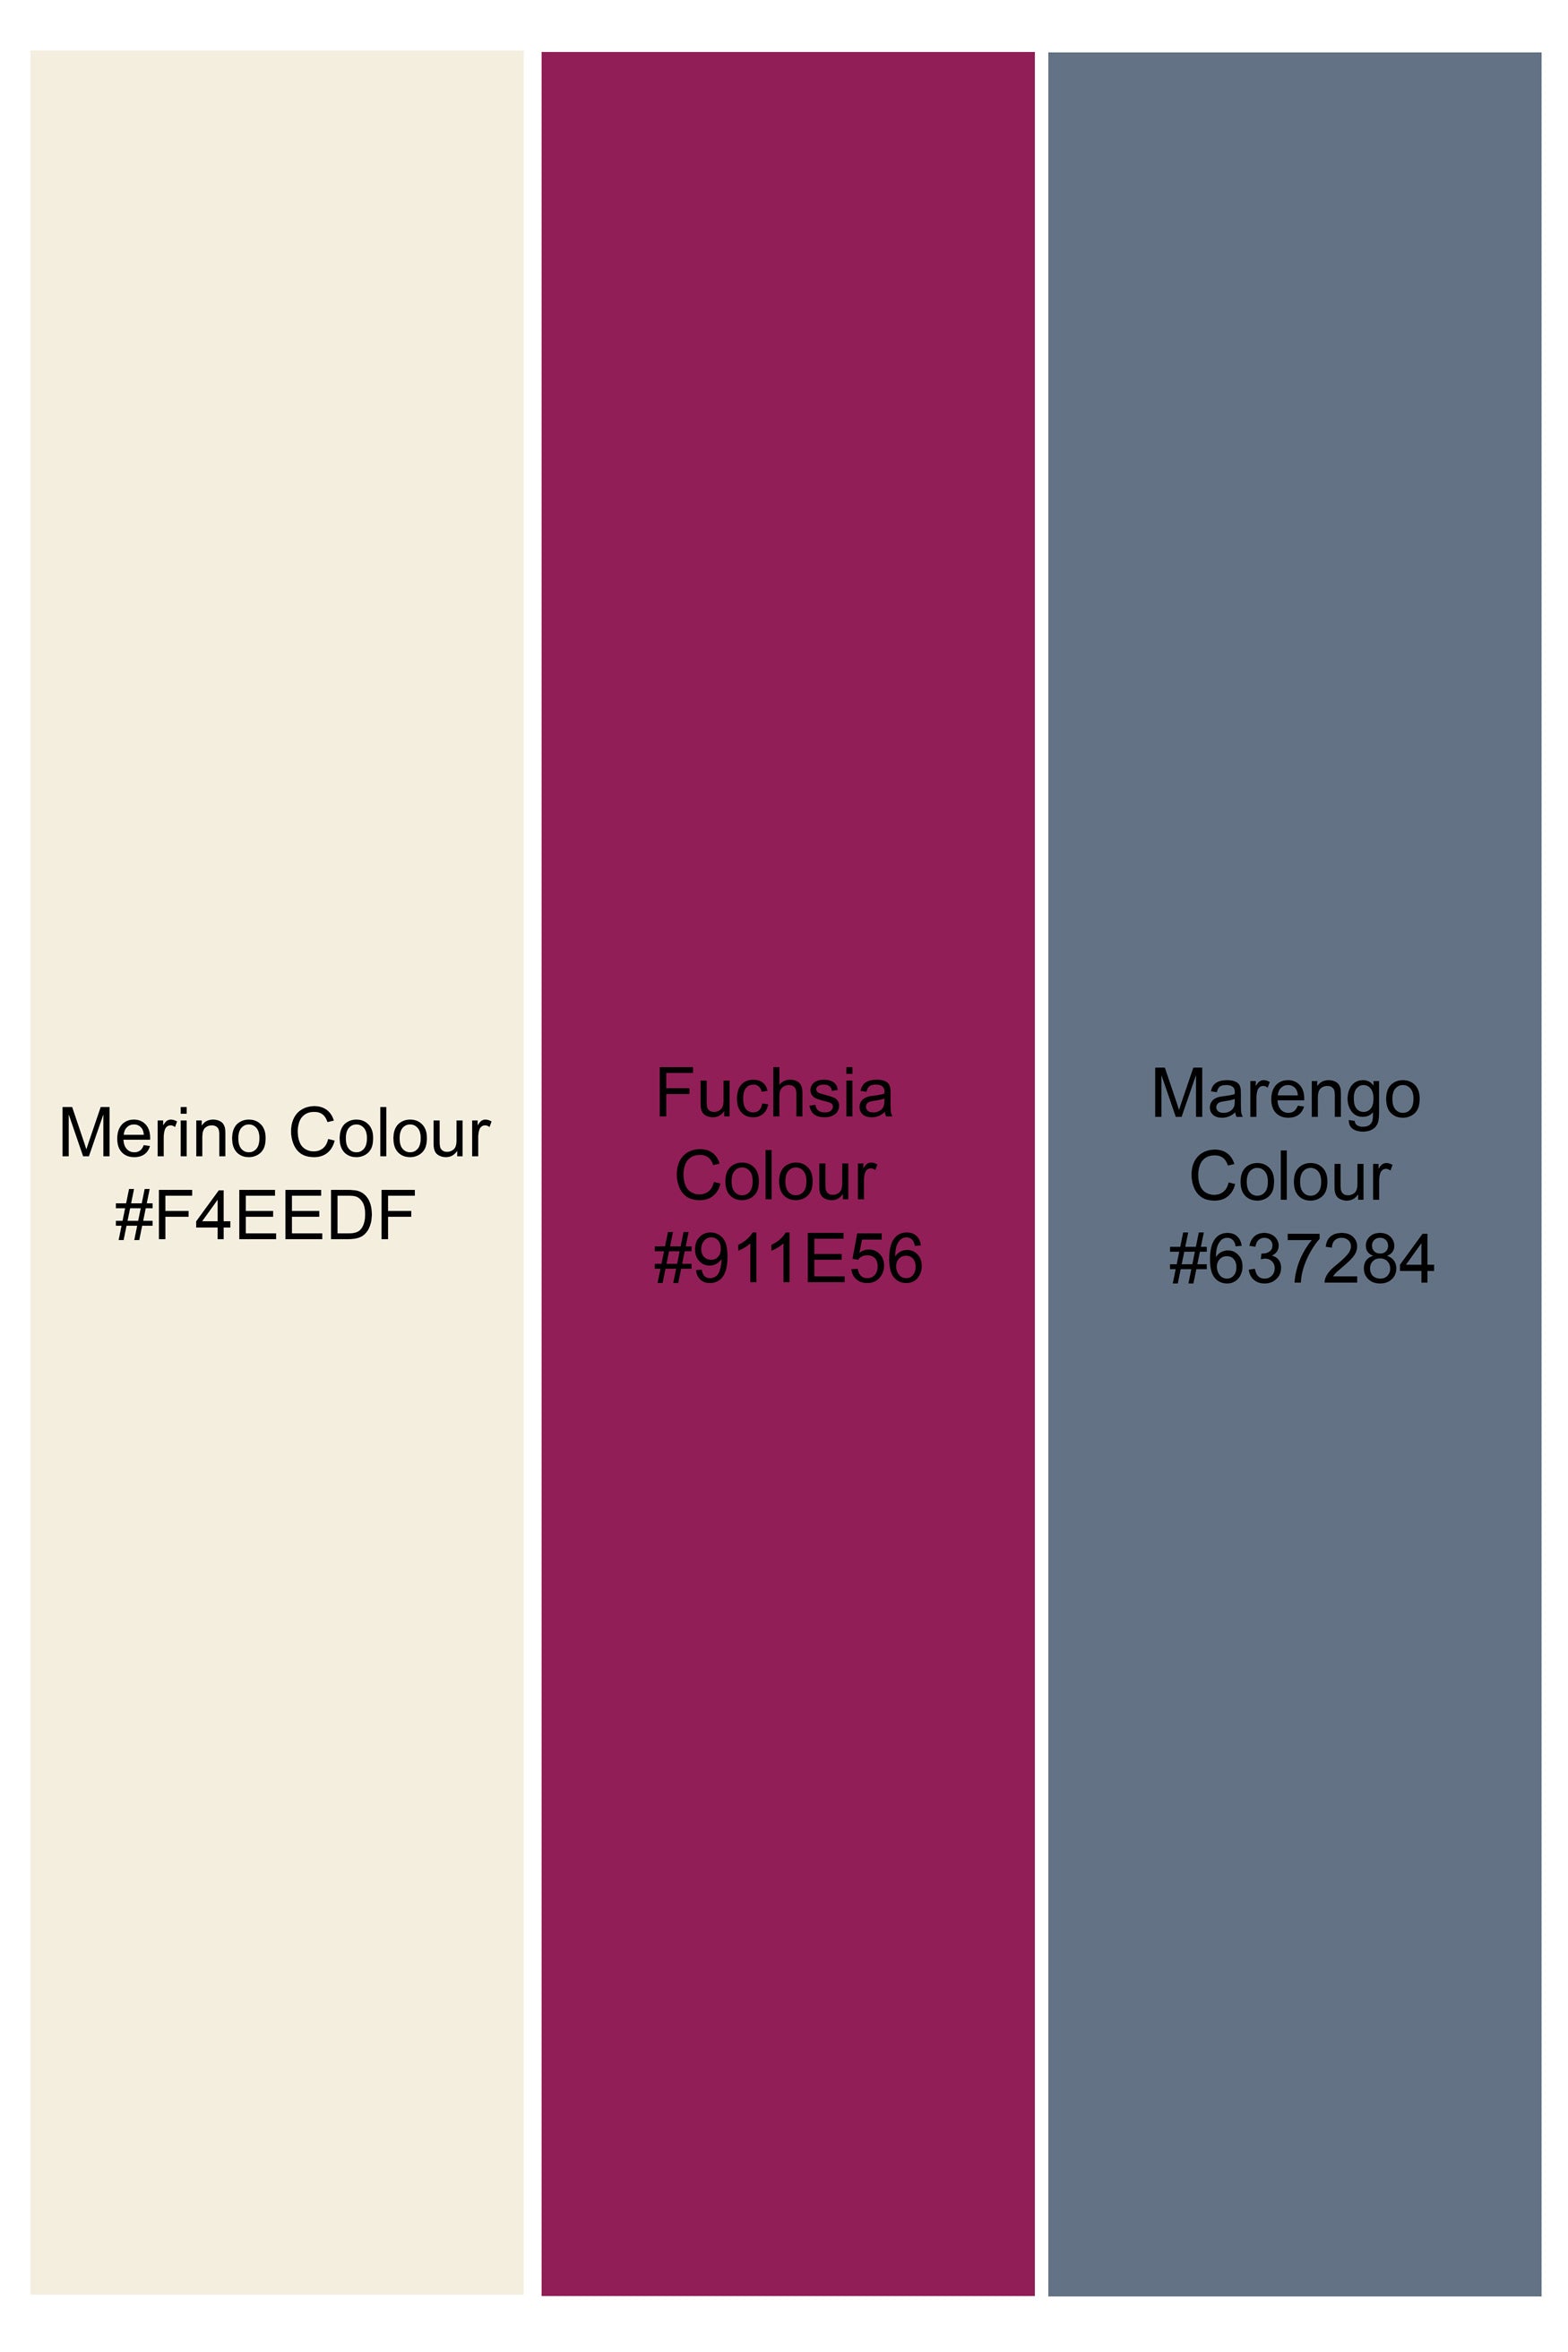 Merino Cream Multicolour Ditsy Printed Premium Cotton Shorts SR393-28, SR393-30, SR393-32, SR393-34, SR393-36, SR393-38, SR393-40, SR393-42, SR393-44